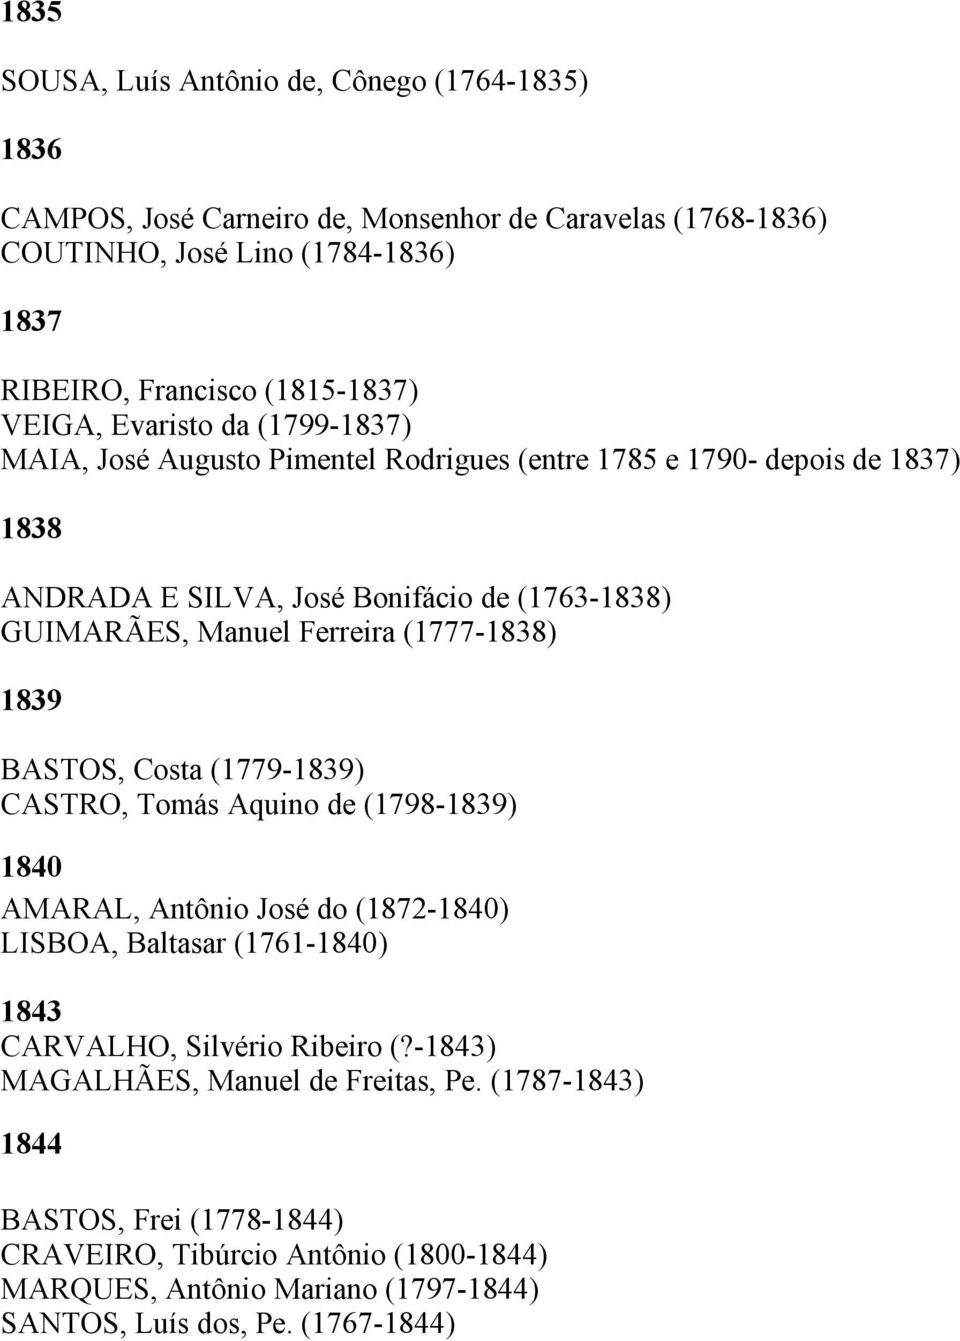 (1777-1838) 1839 BASTOS, Costa (1779-1839) CASTRO, Tomás Aquino de (1798-1839) 1840 AMARAL, Antônio José do (1872-1840) LISBOA, Baltasar (1761-1840) 1843 CARVALHO, Silvério Ribeiro (?